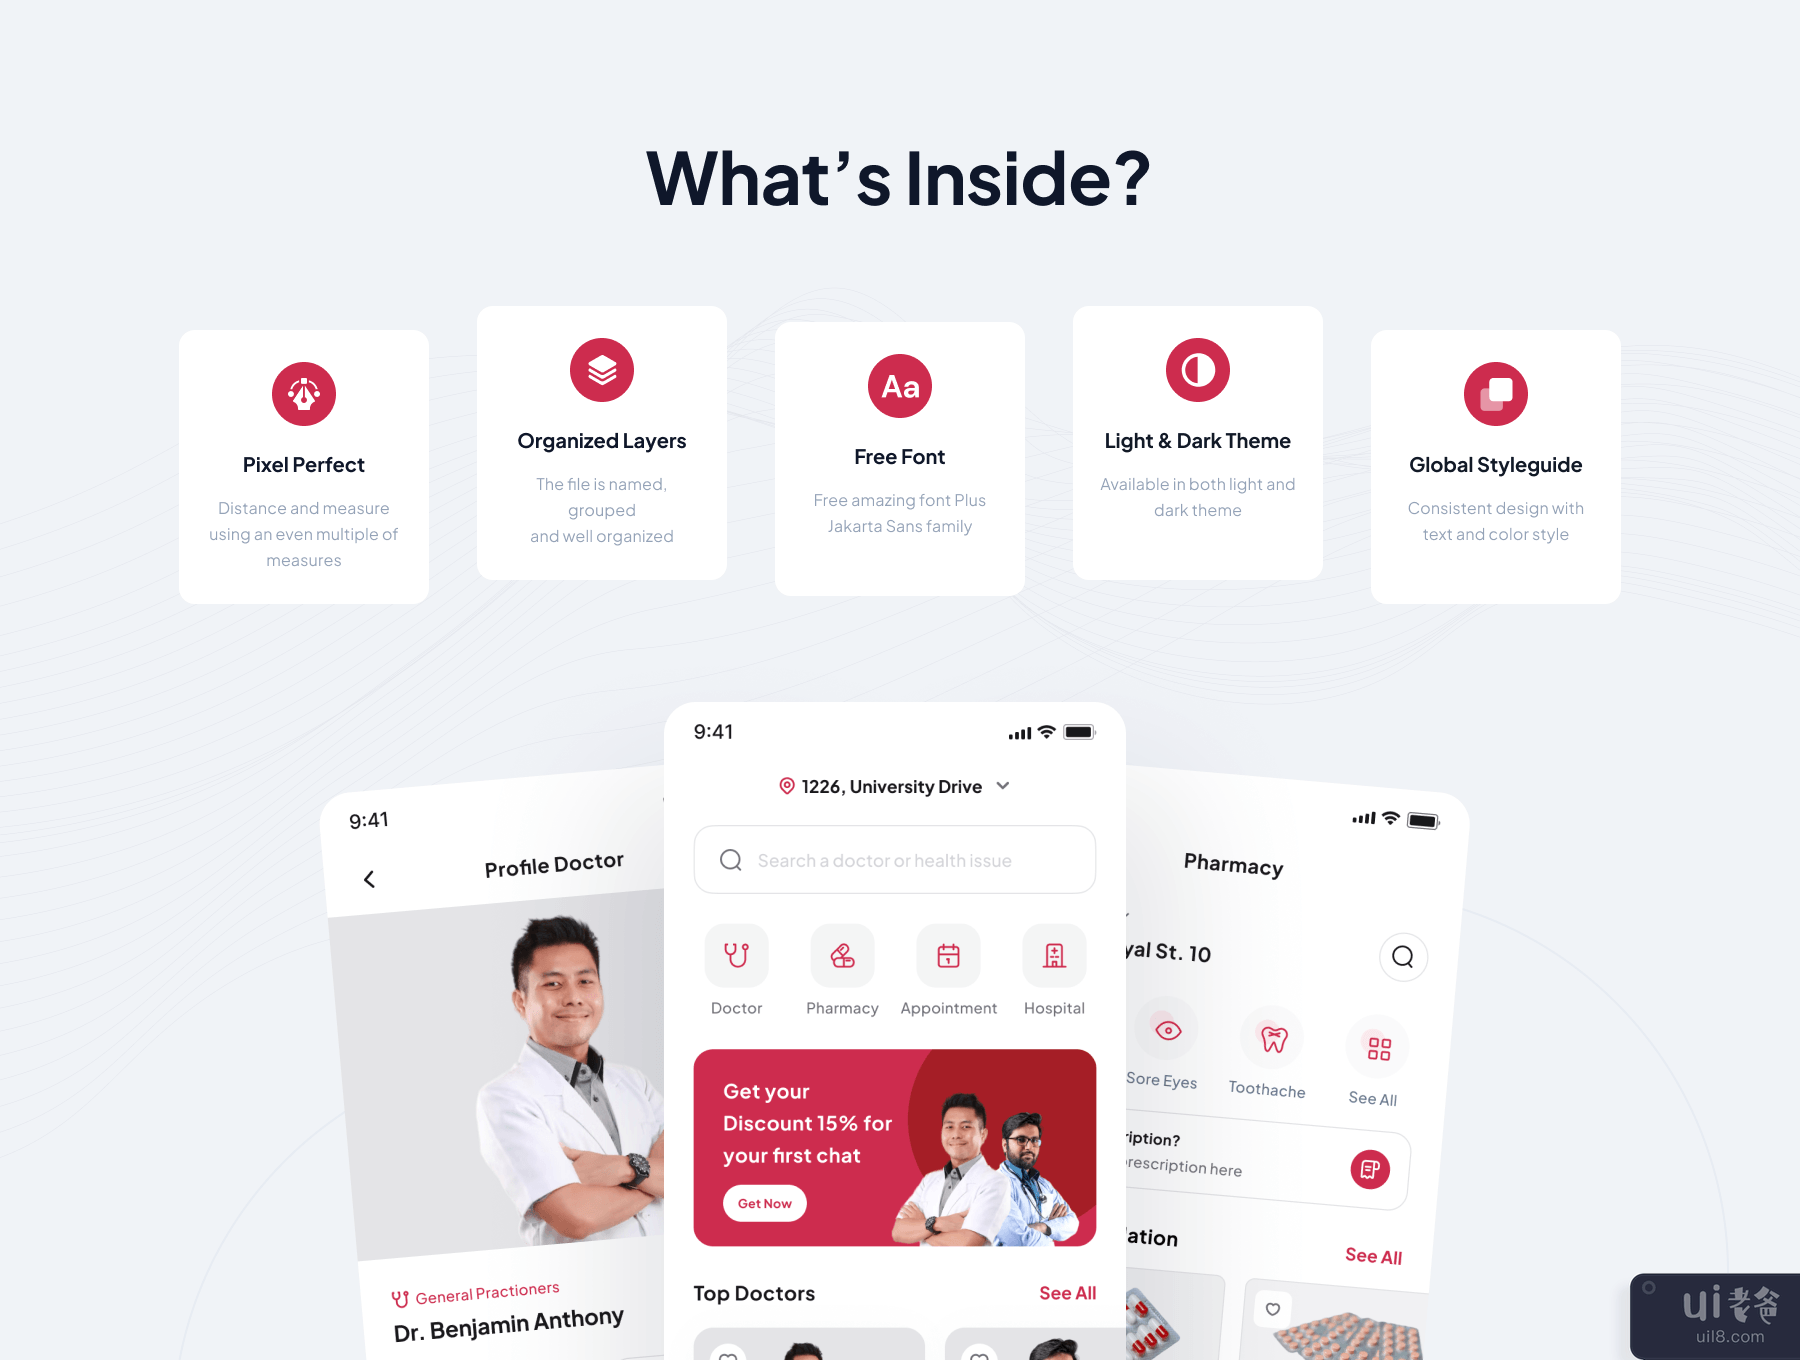 Mediline - 医疗保健应用程序 UI 工具包 (Mediline - Medical & Healthcare App UI Kit)插图4